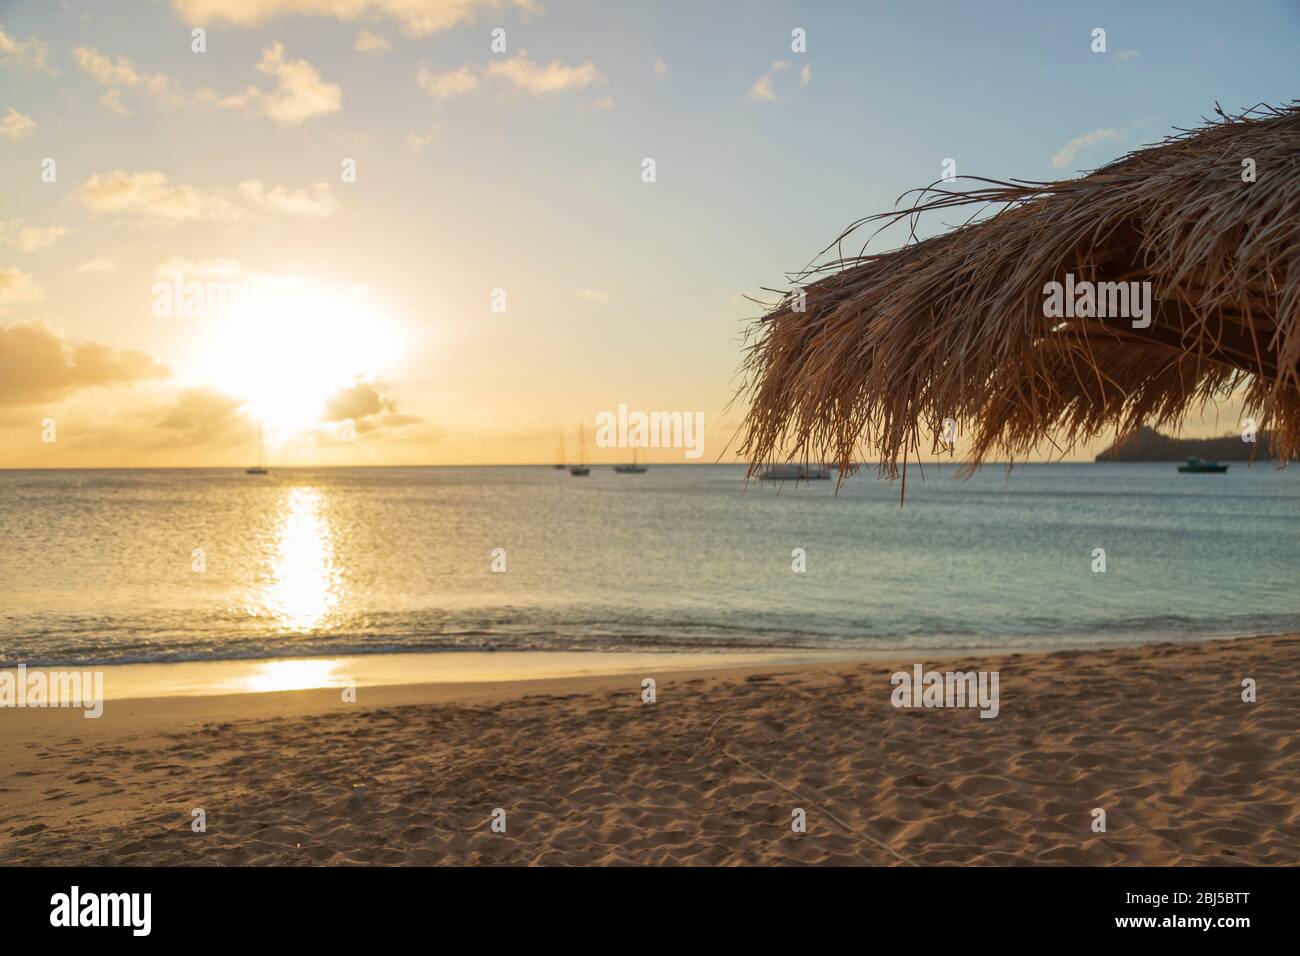 Licht reflektiert auf dem Wasser, als die Sonne nahe dem Horizont erreicht und das Ende eines anderen Tages an einem Urlaubsstrand signalisiert Stockfoto